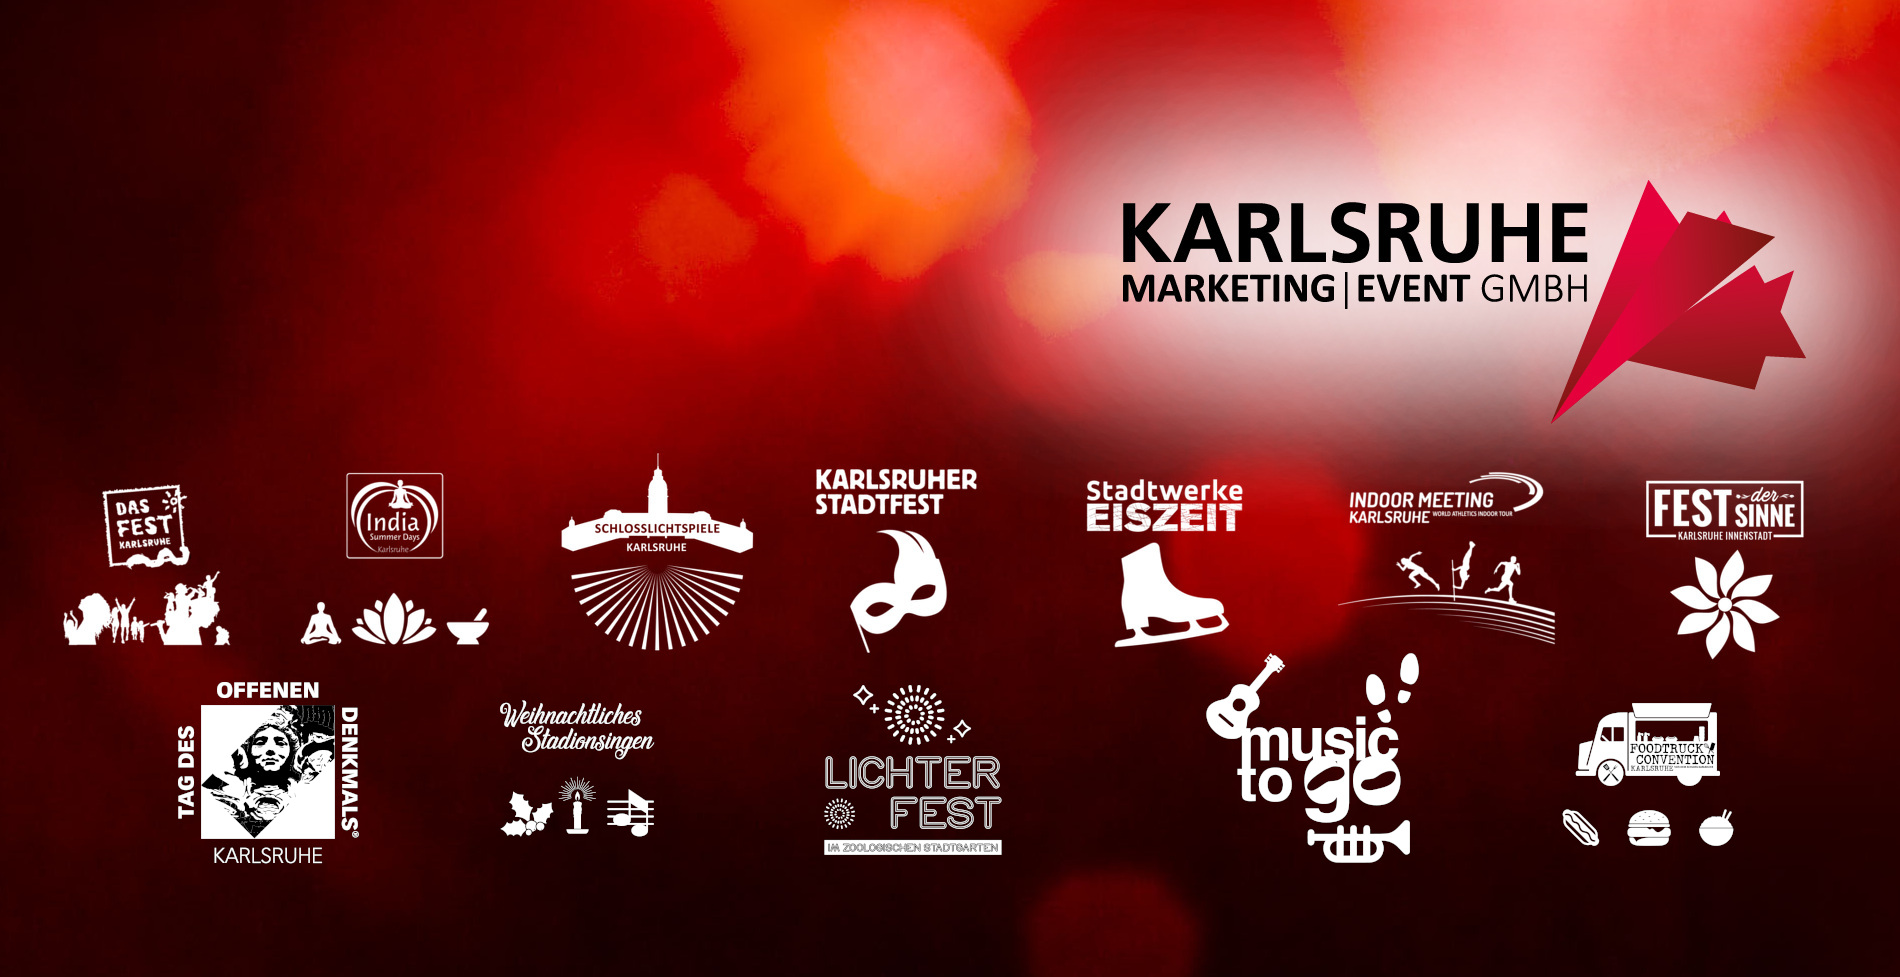 Die Karlsruhe Marketing und Event GmbH wünscht frohe Weihnachten und einen guten Rutsch ins Jahr 2021!